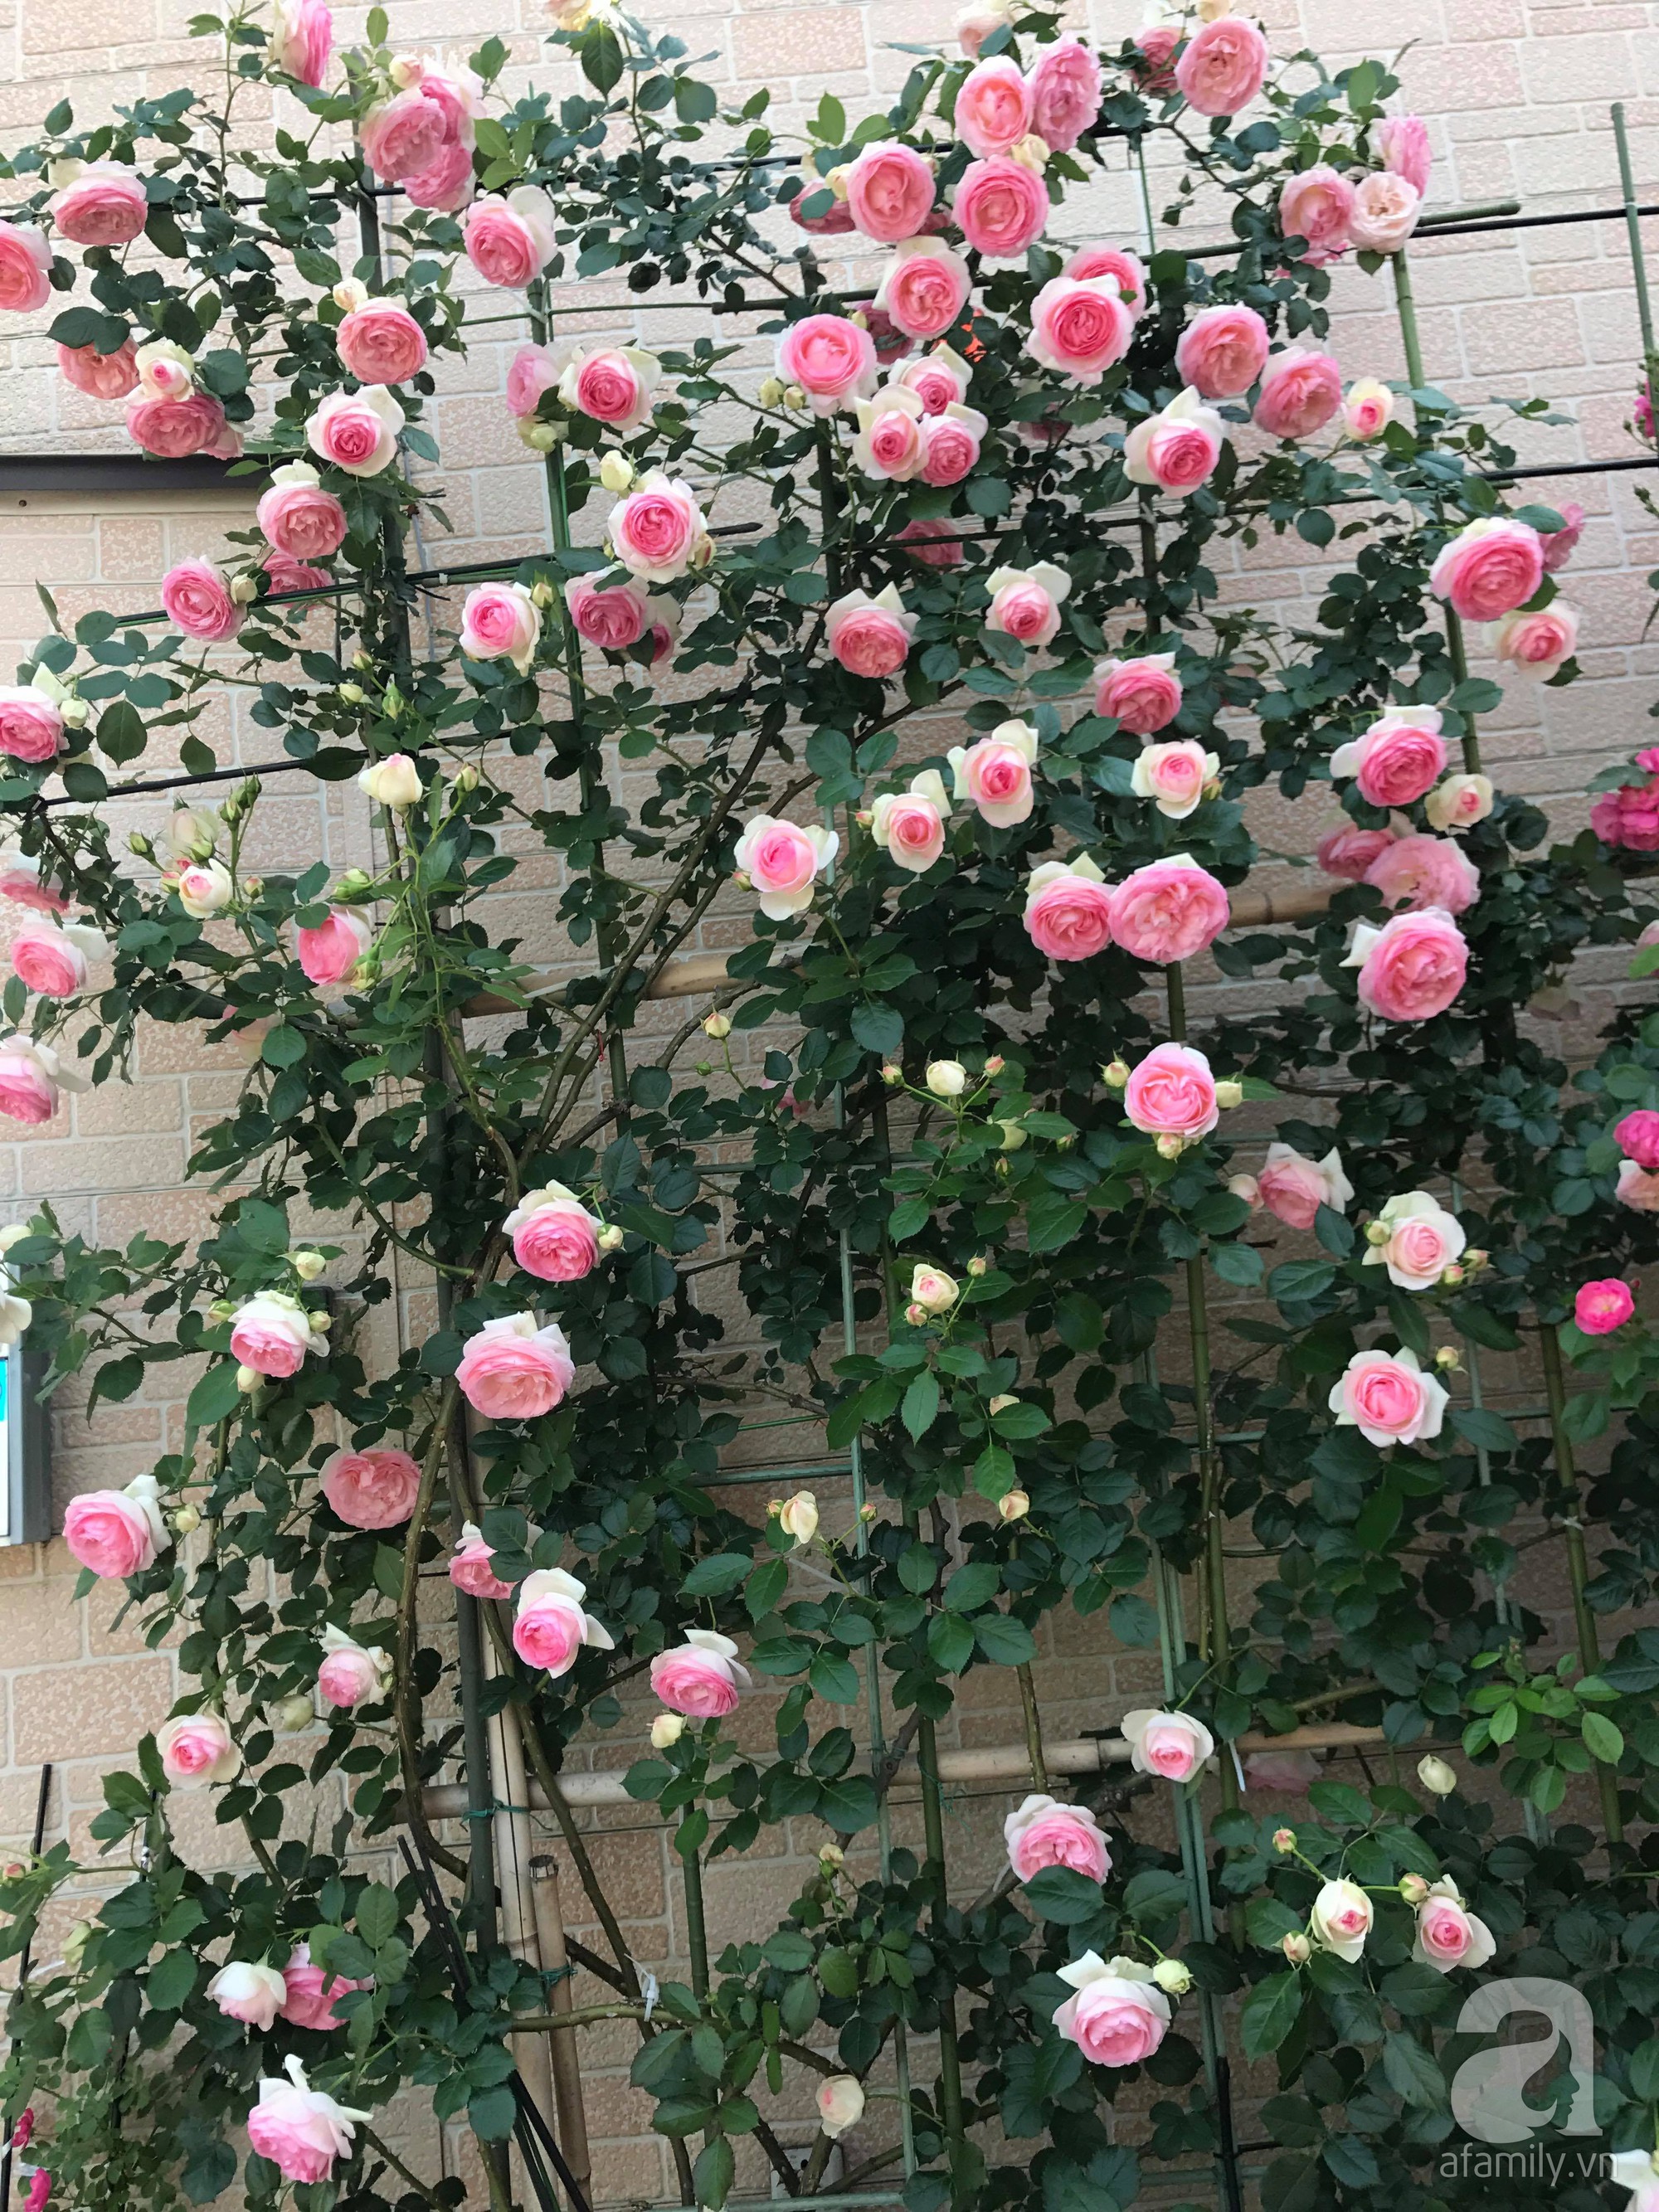 Bức tường hoa hồng đẹp như mơ trong sân vườn vỏn vẹn 6m²